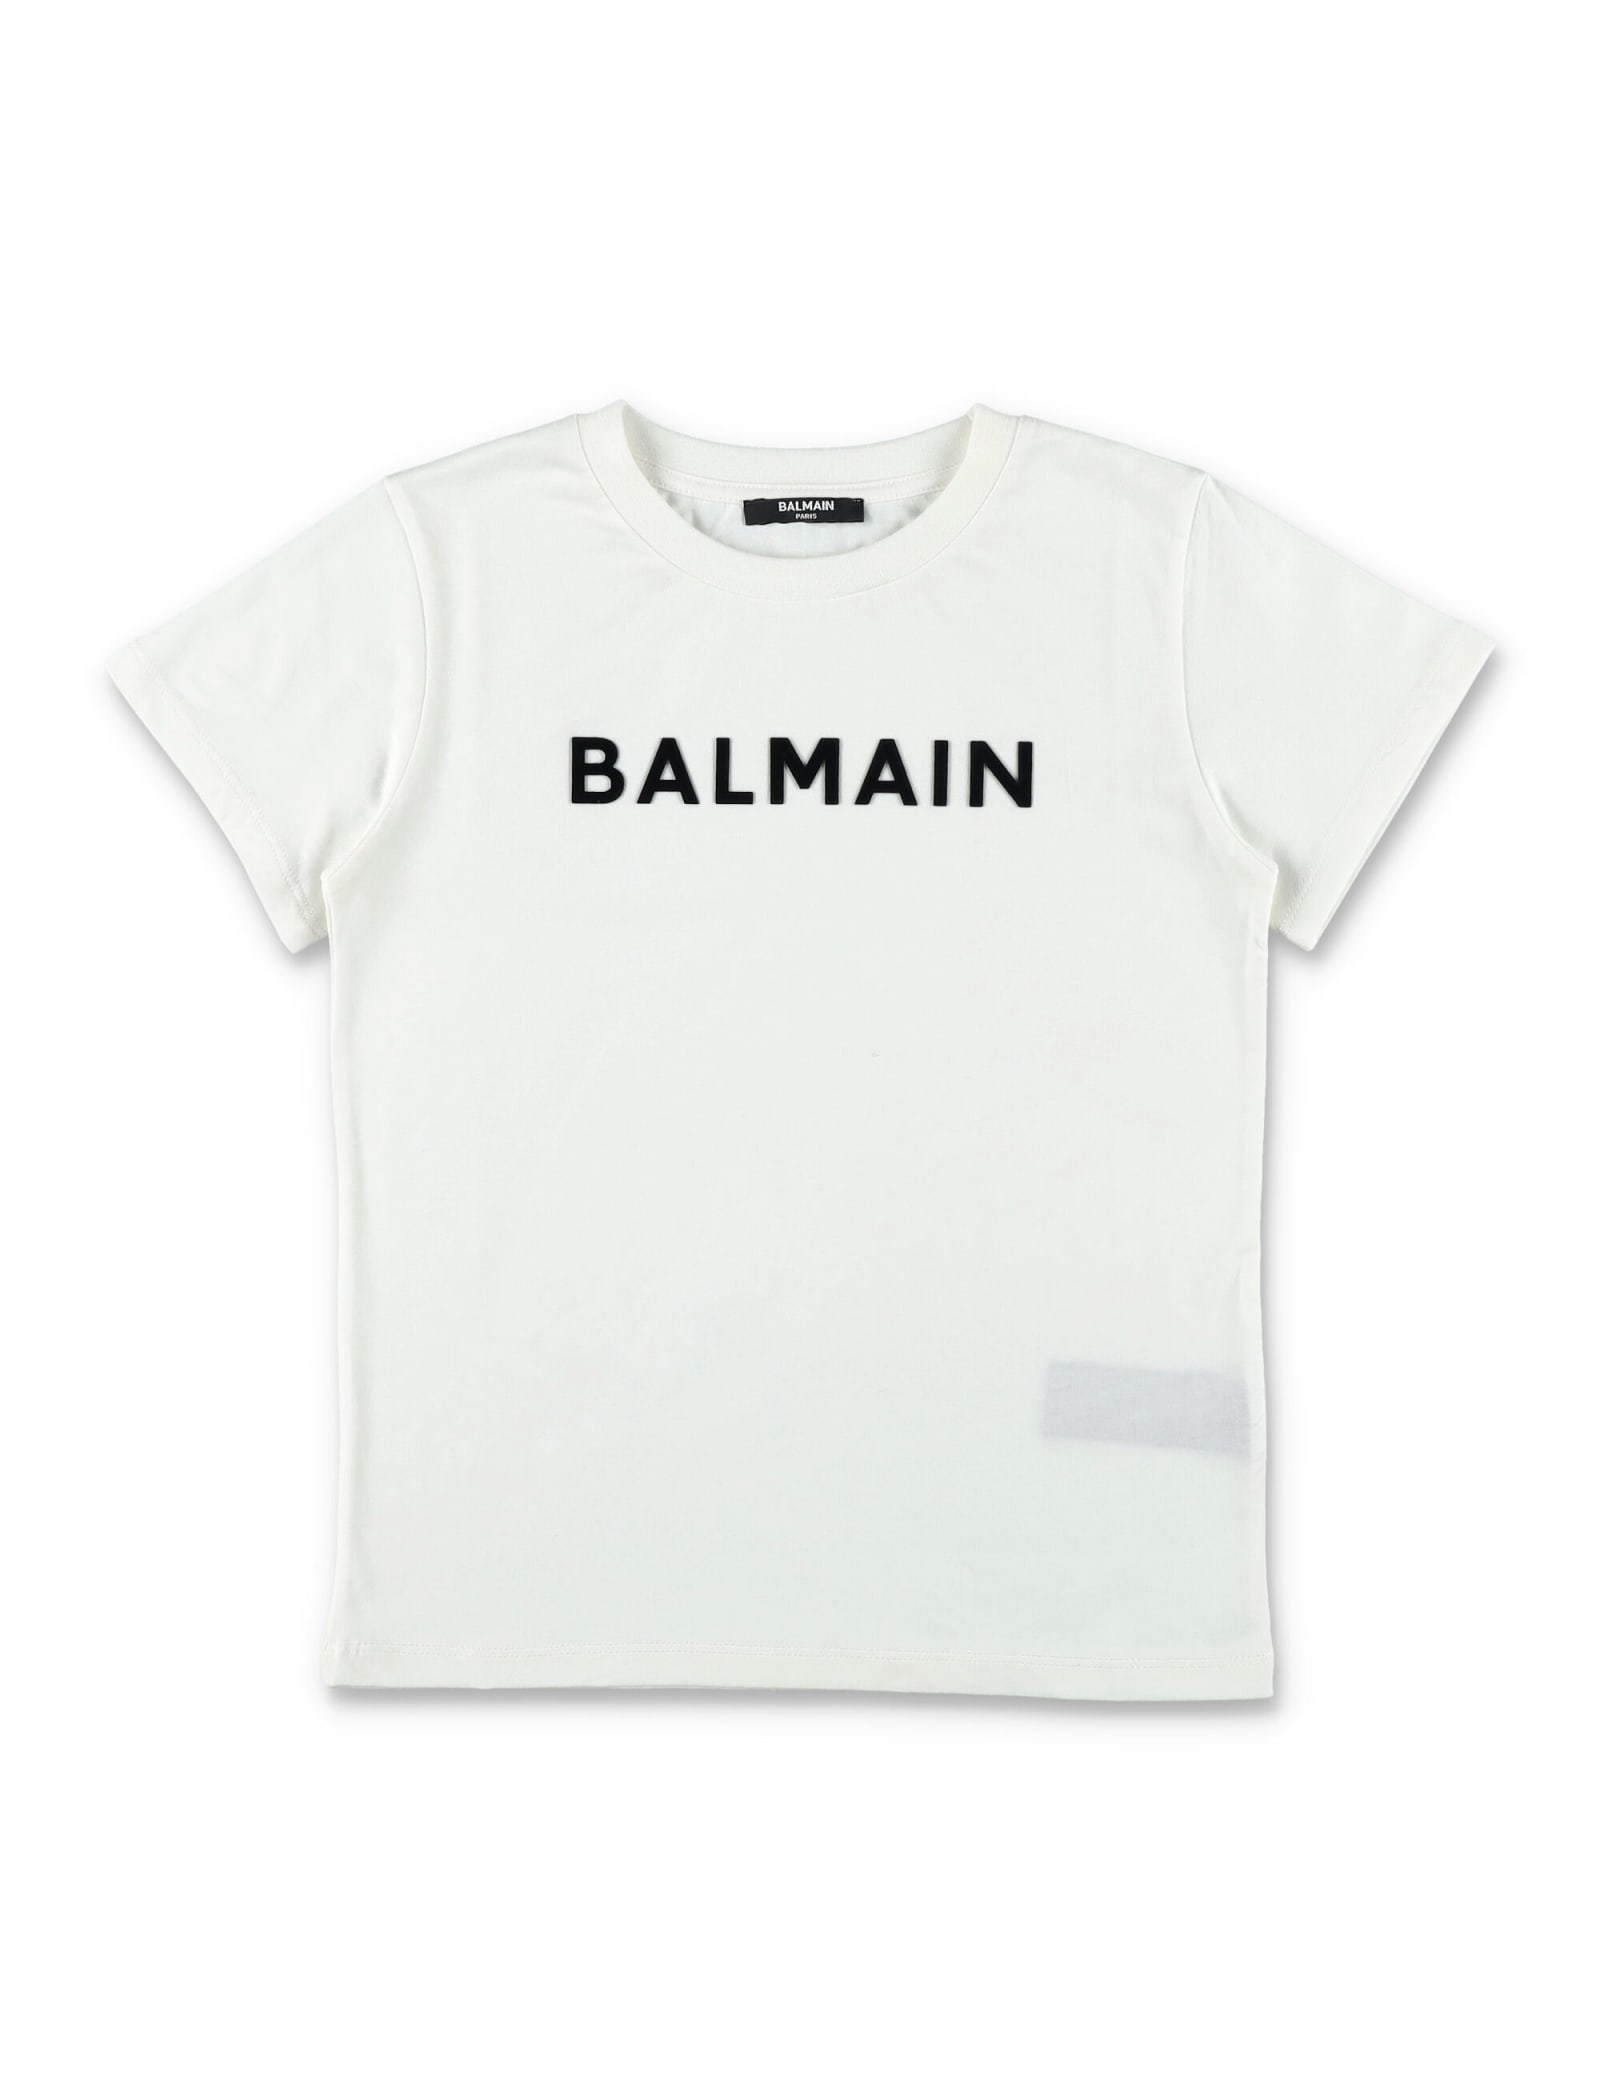 Balmain Kids' Logo T-shirt In Ivory/black